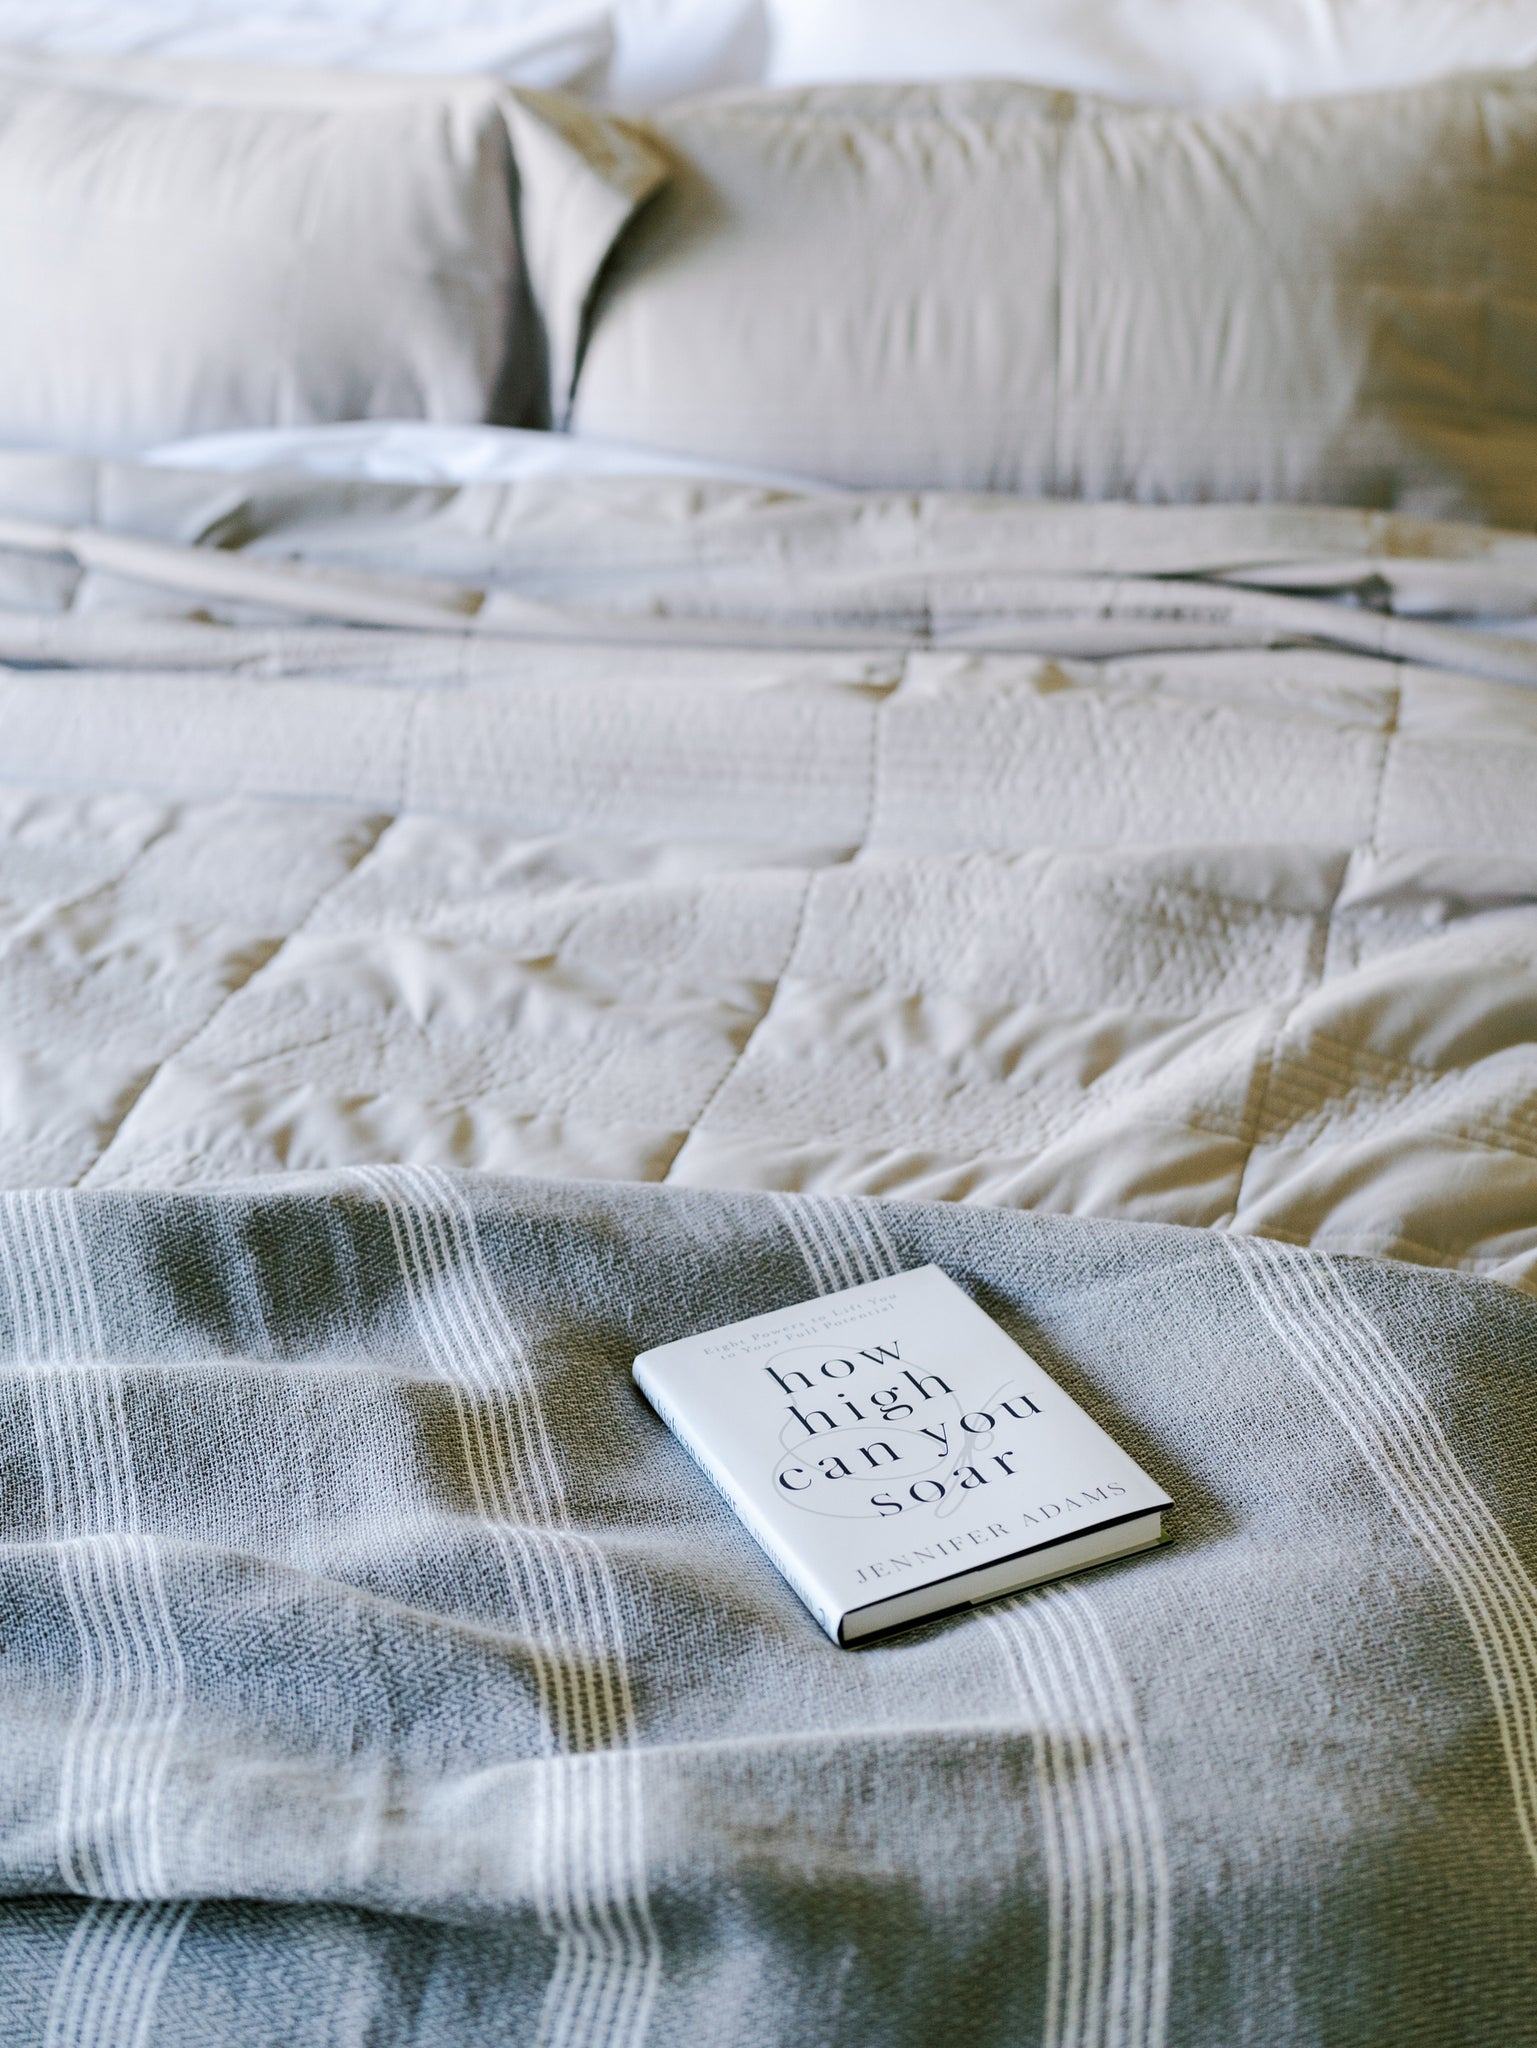 Jennifer Adams blanket on a bed